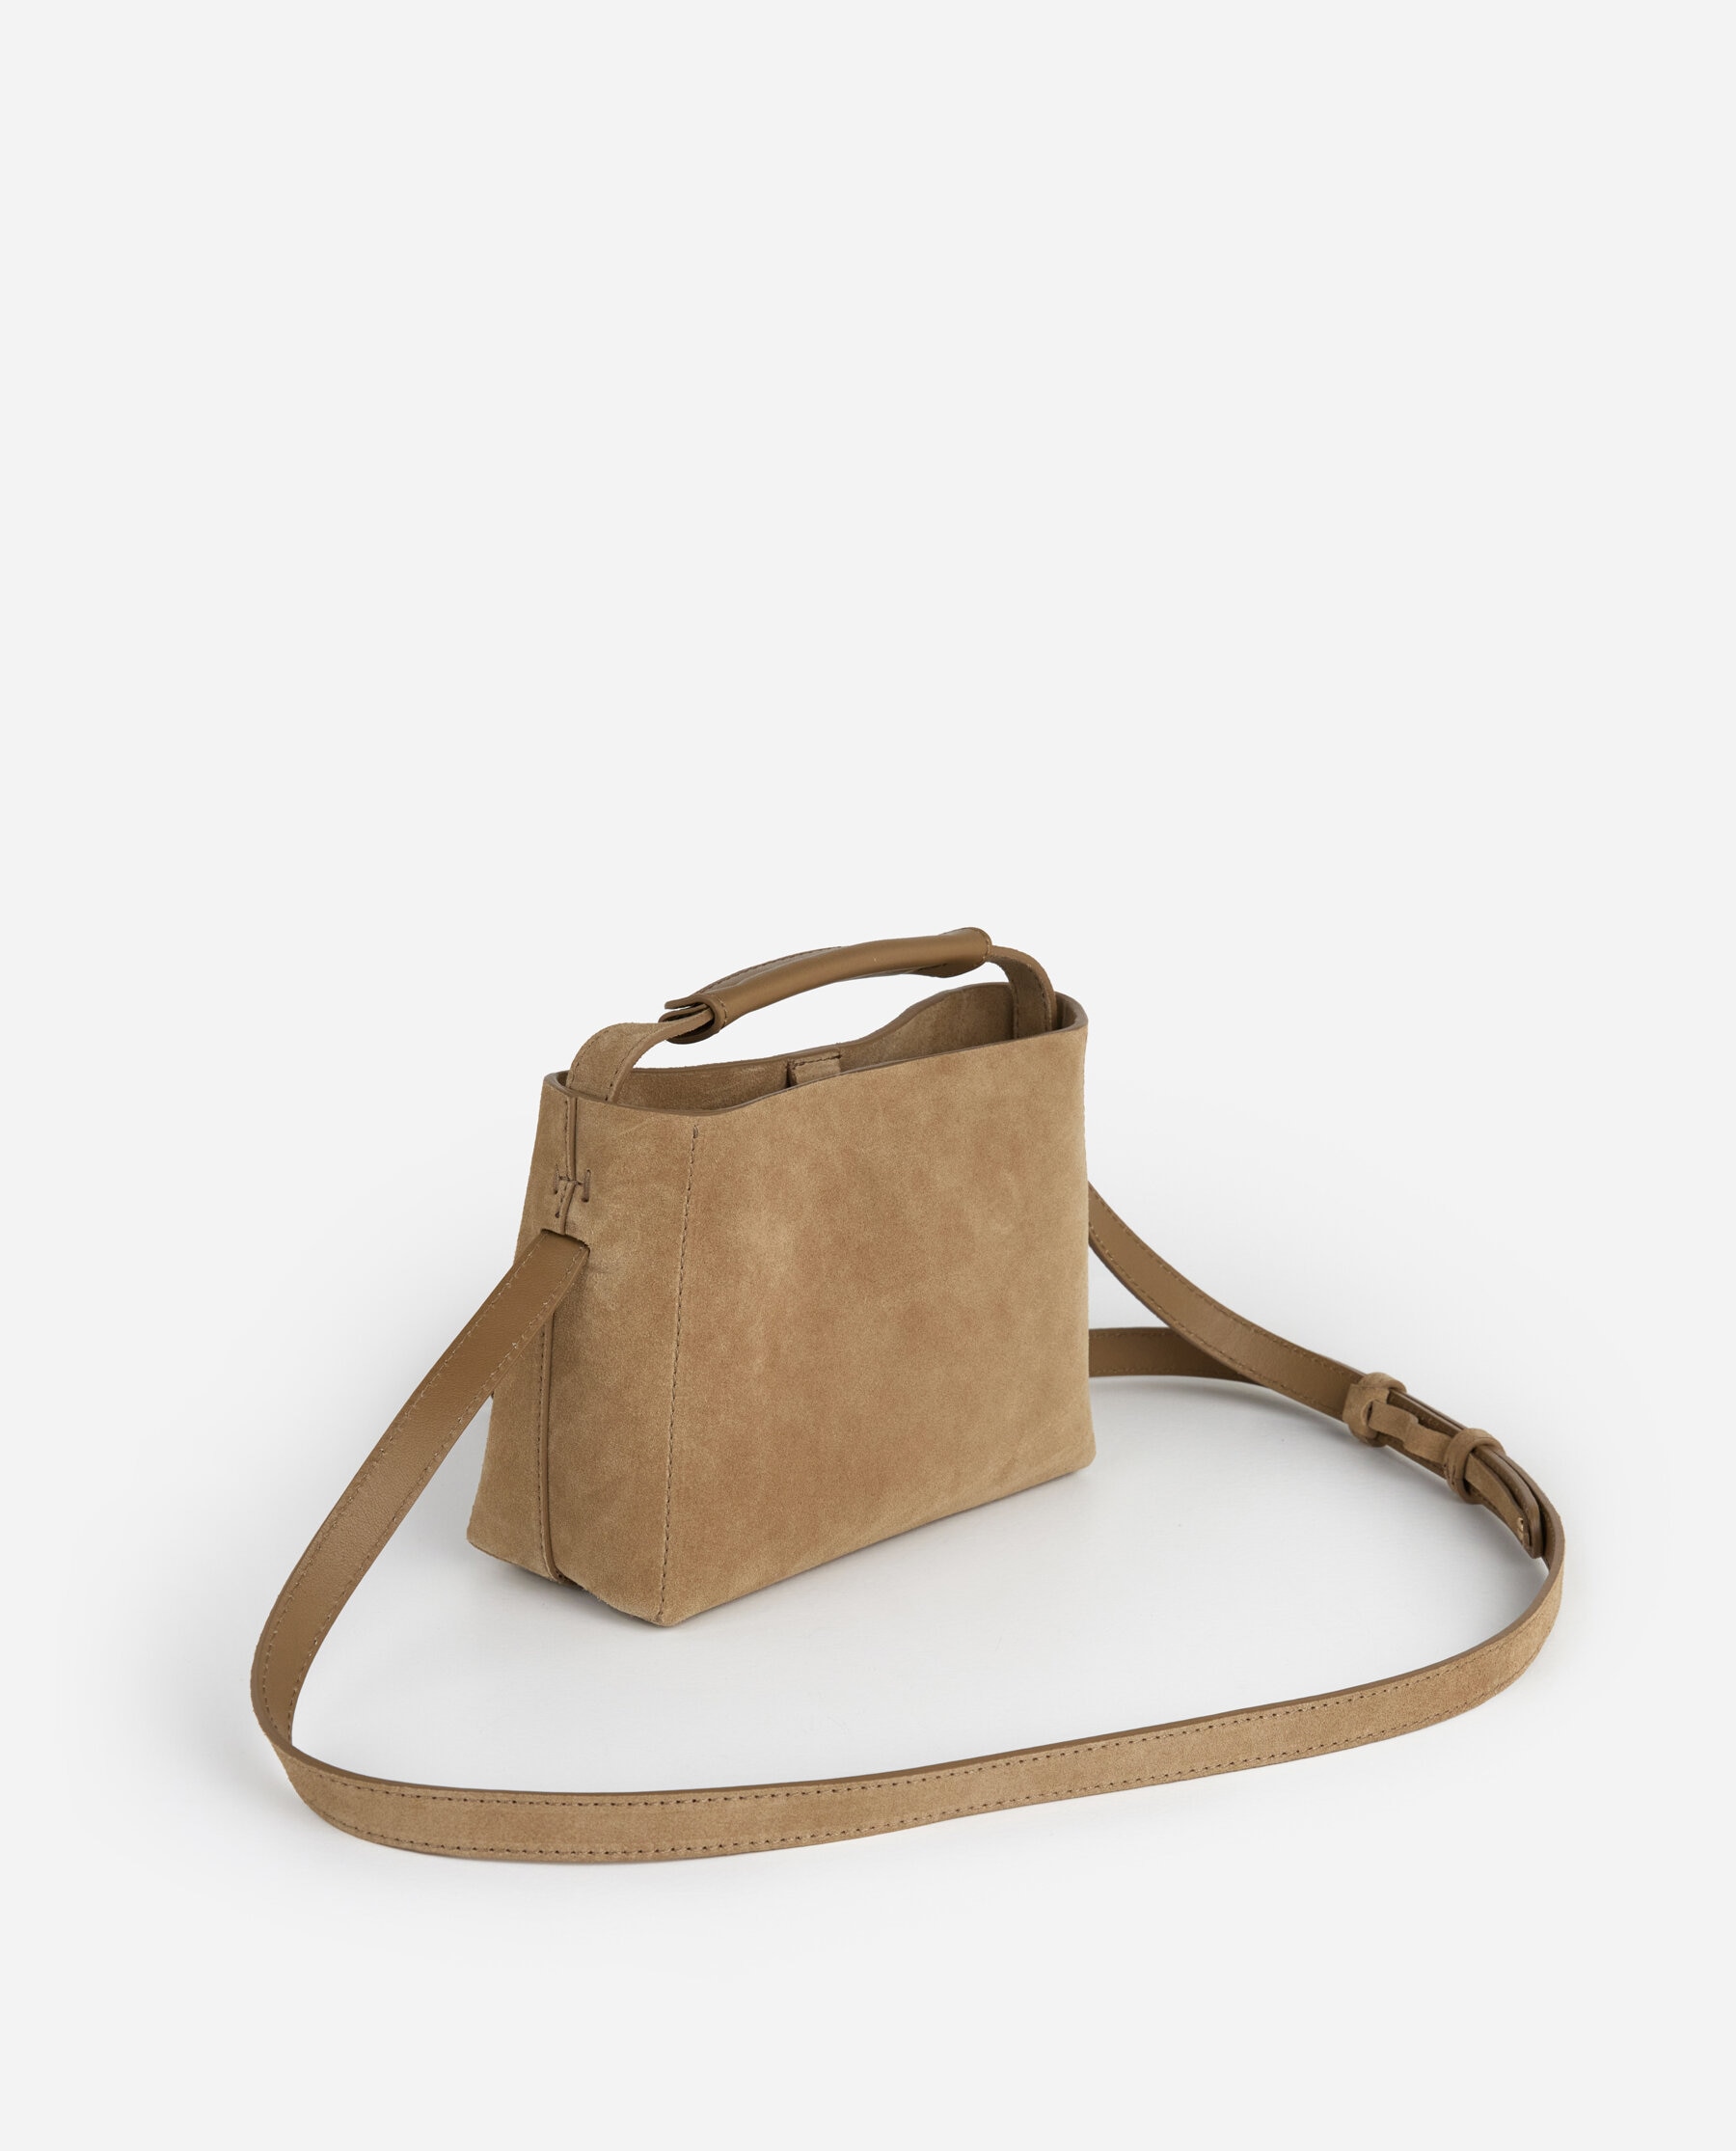 販売特注suede real leather hand bag ハンドバッグ